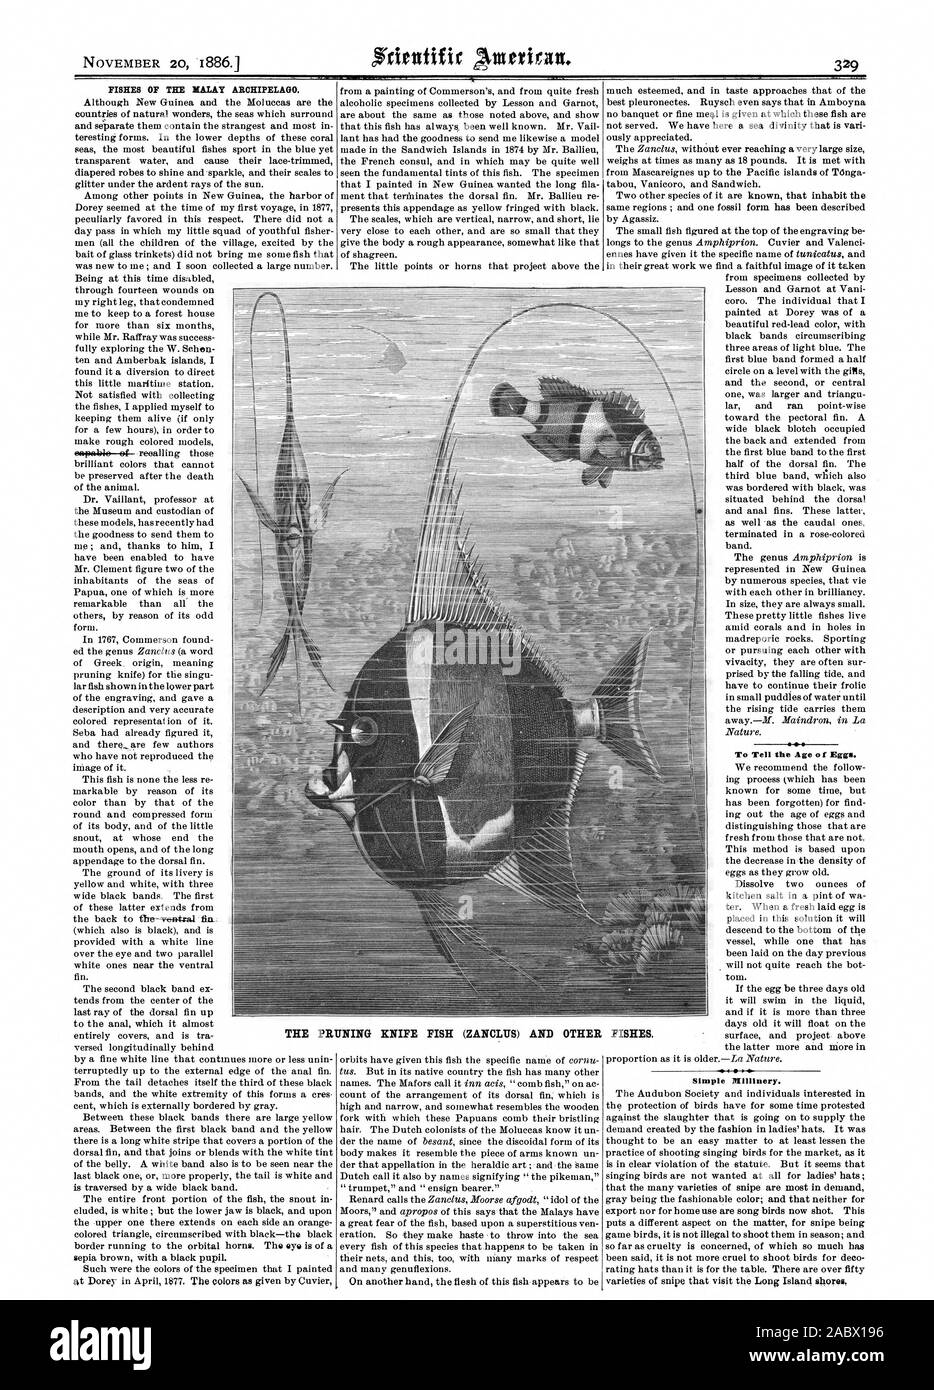 Fische T-malaiischen Archipel. Das Alter der Eier zu erzählen. Einfache Millinery. Die BESCHNEIDUNG MESSER FISCH (ZANCLUS) und andere Fische., Scientific American, 1886-11-20 Stockfoto